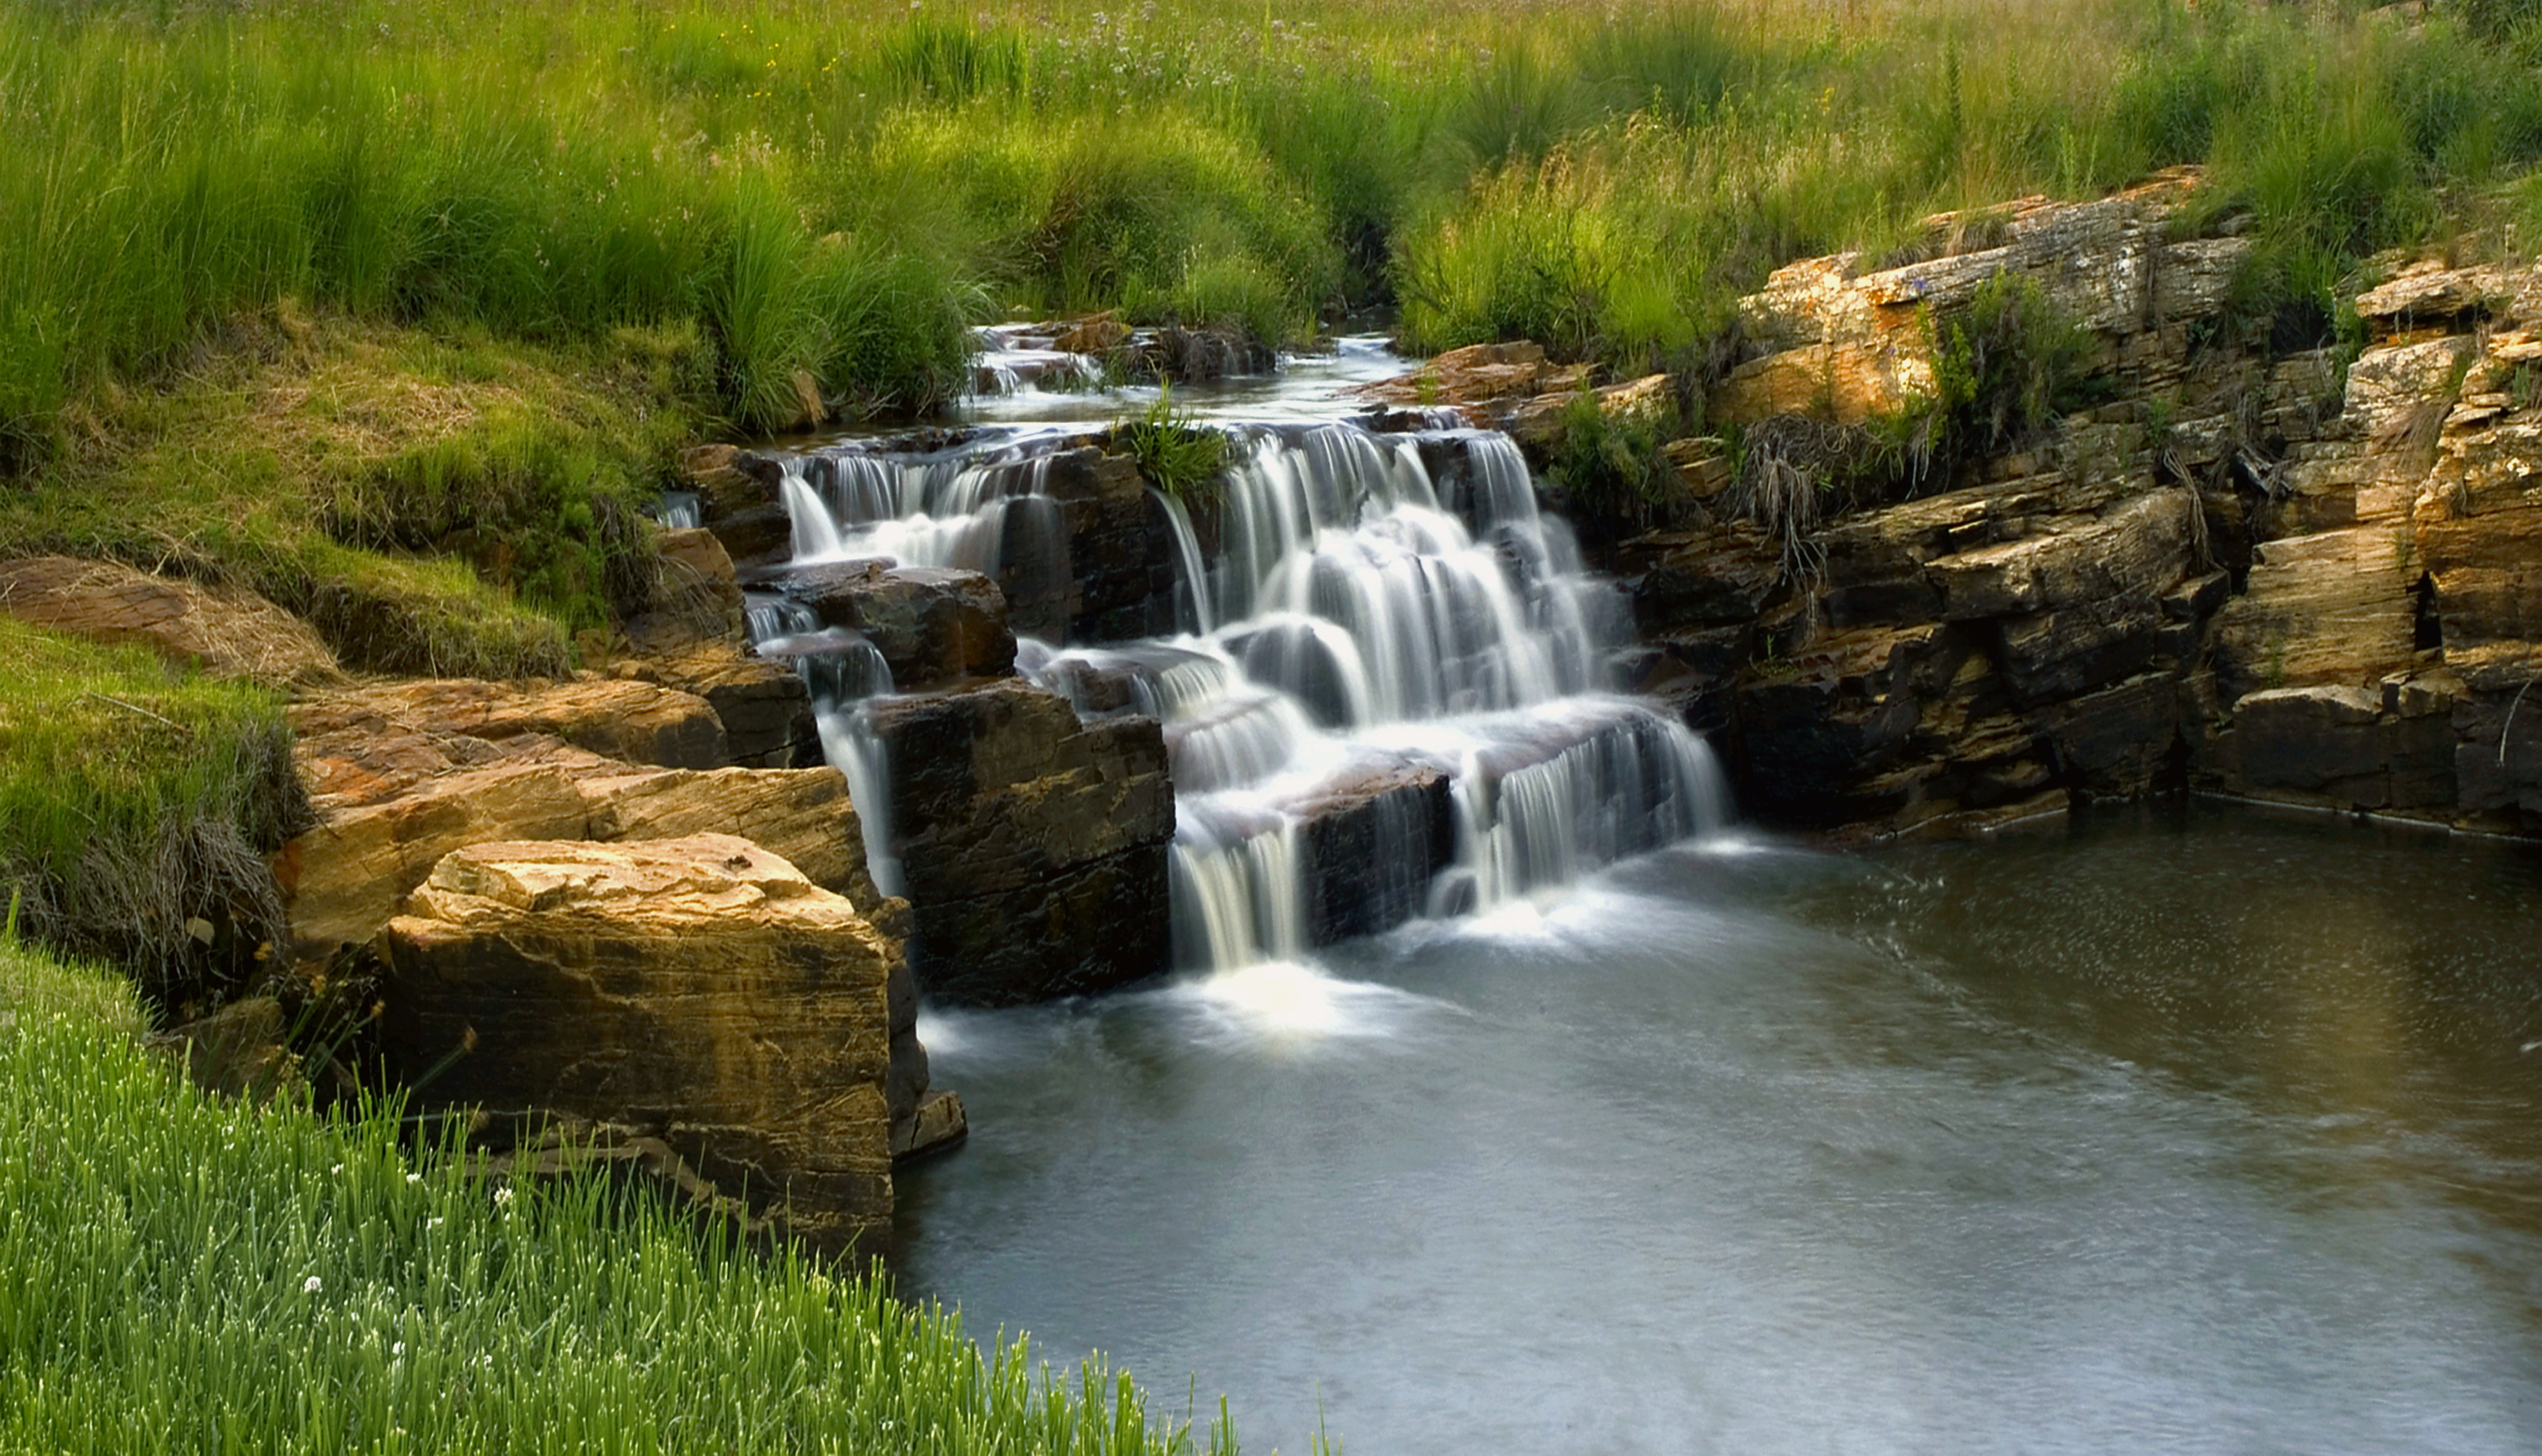 دانلود Background خوشگل آبشار پلکانی کوچک در دل طبیعت سبز